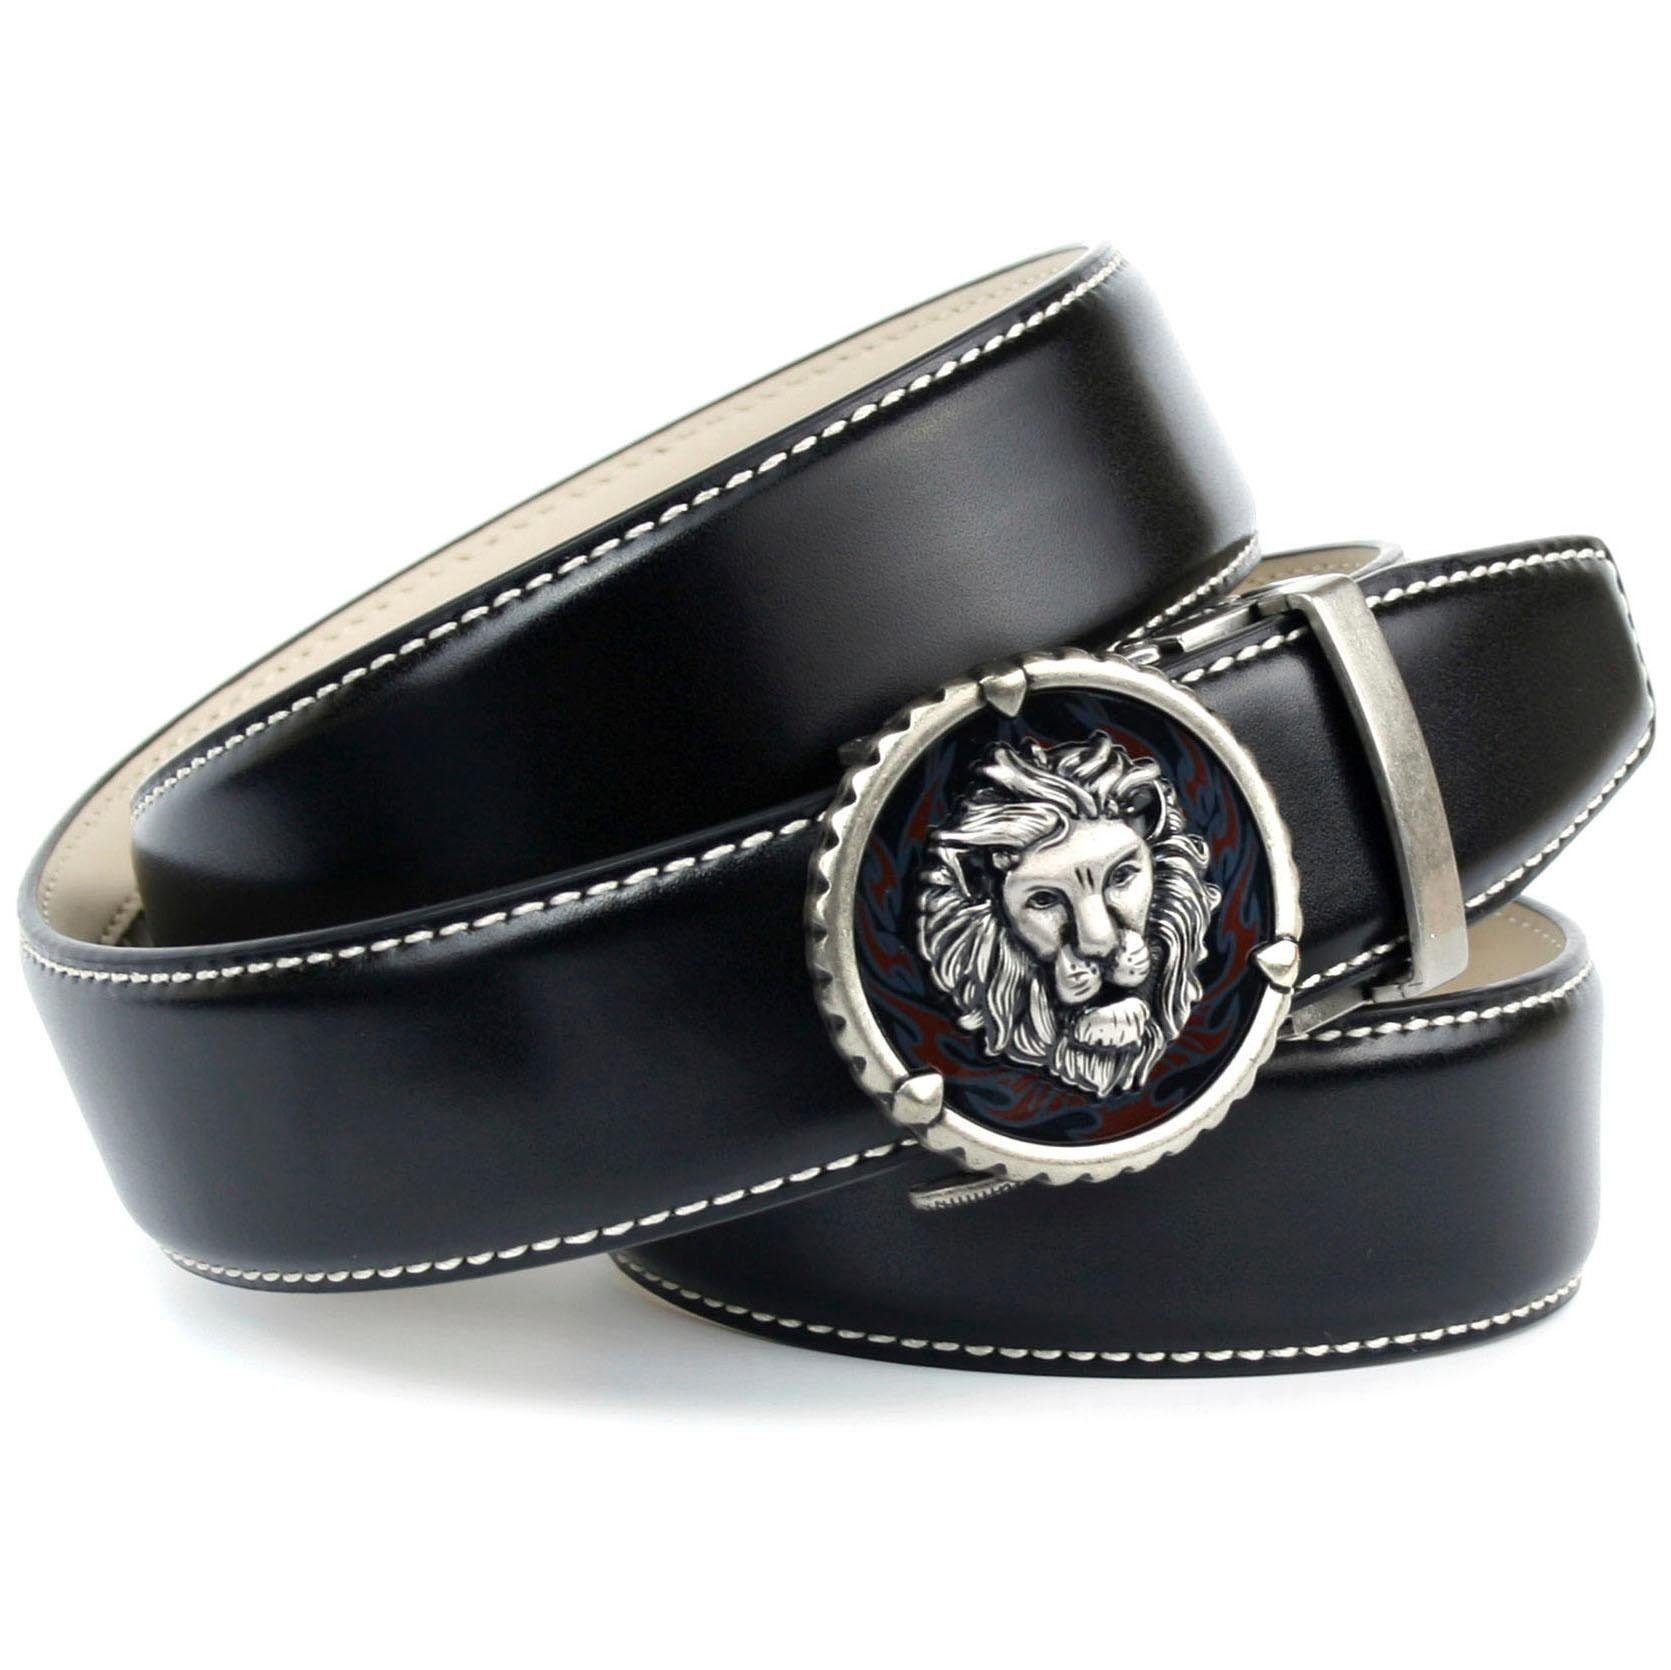 Anthoni Crown Ledergürtel in schwarz mit Kontrast Stitching in weiß,  Verpackung - Anthoni Crown Geschenkstoffbeutel | Anzuggürtel